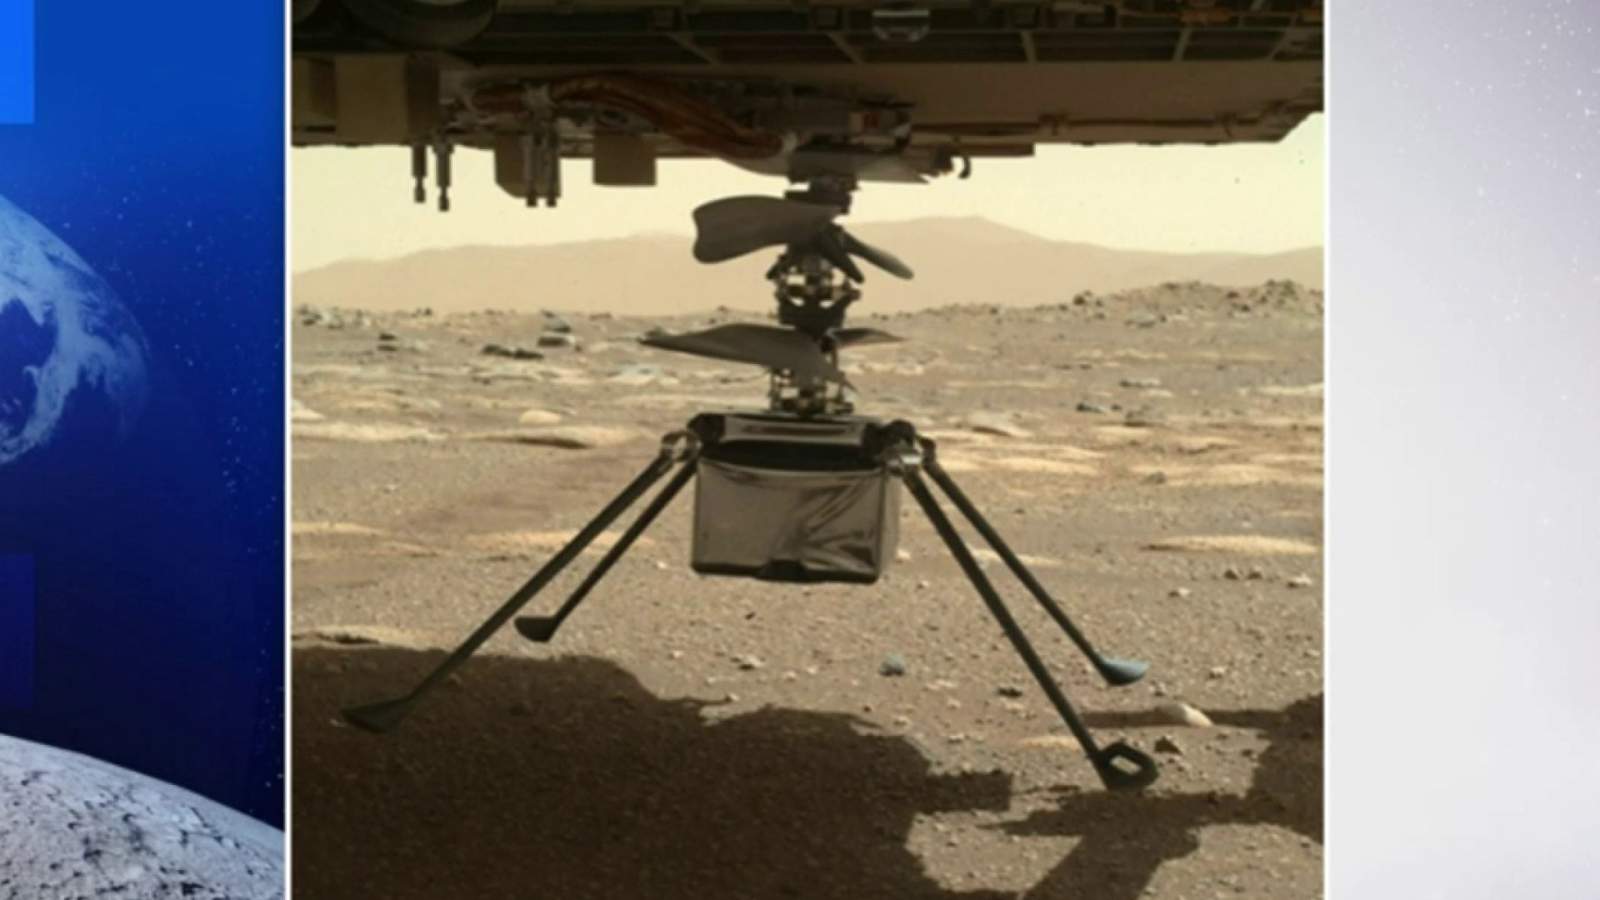 Small NASA chopper nearly ready for Mars flight